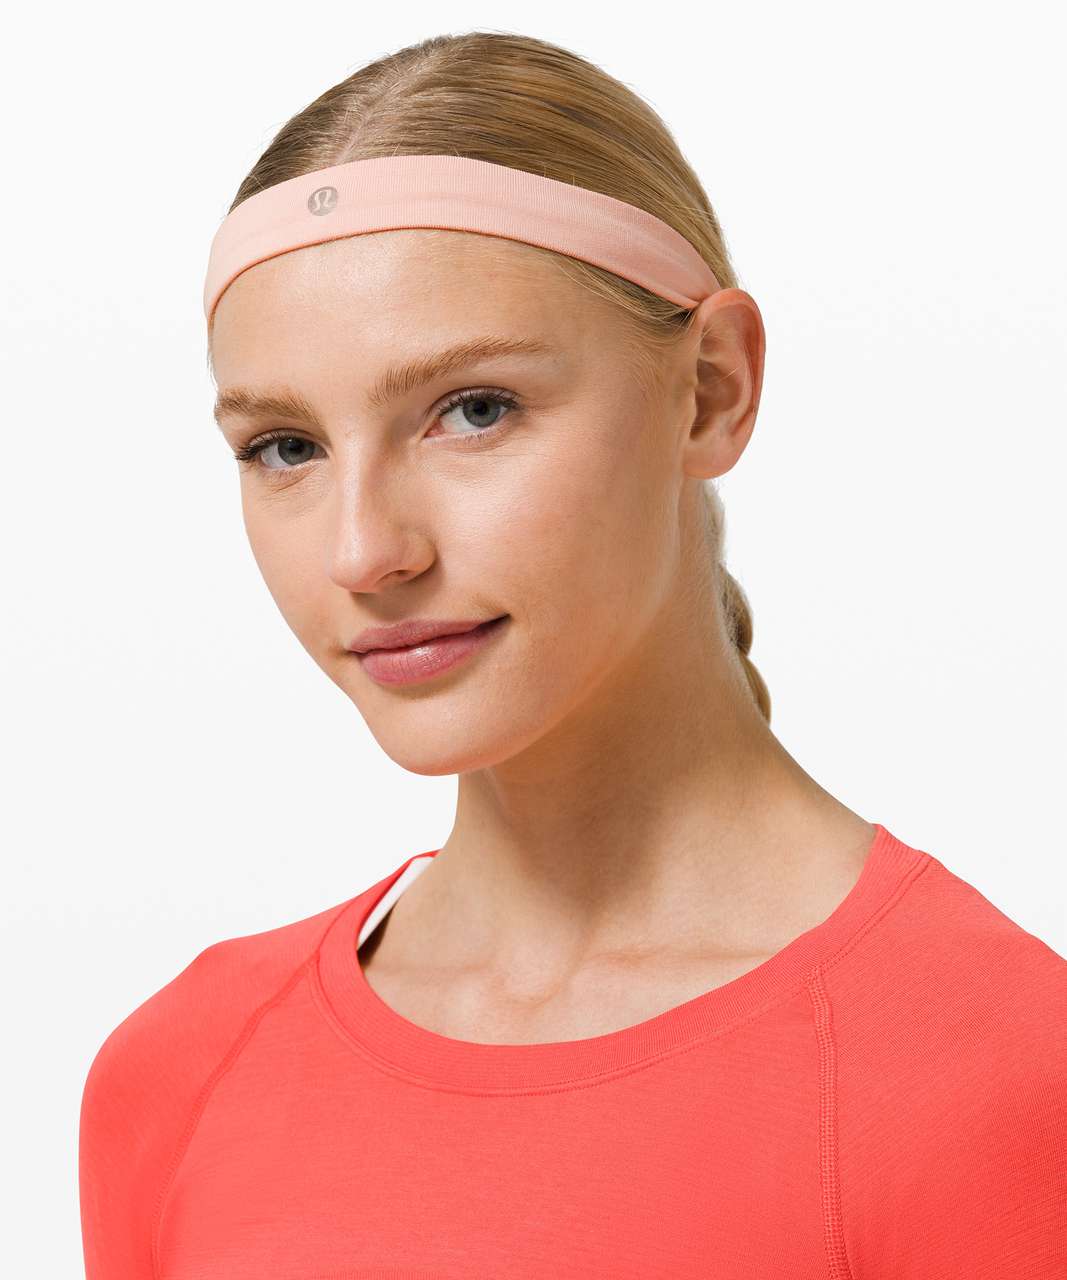 Lululemon Cardio Cross Trainer Headband - Heathered Pink Mist